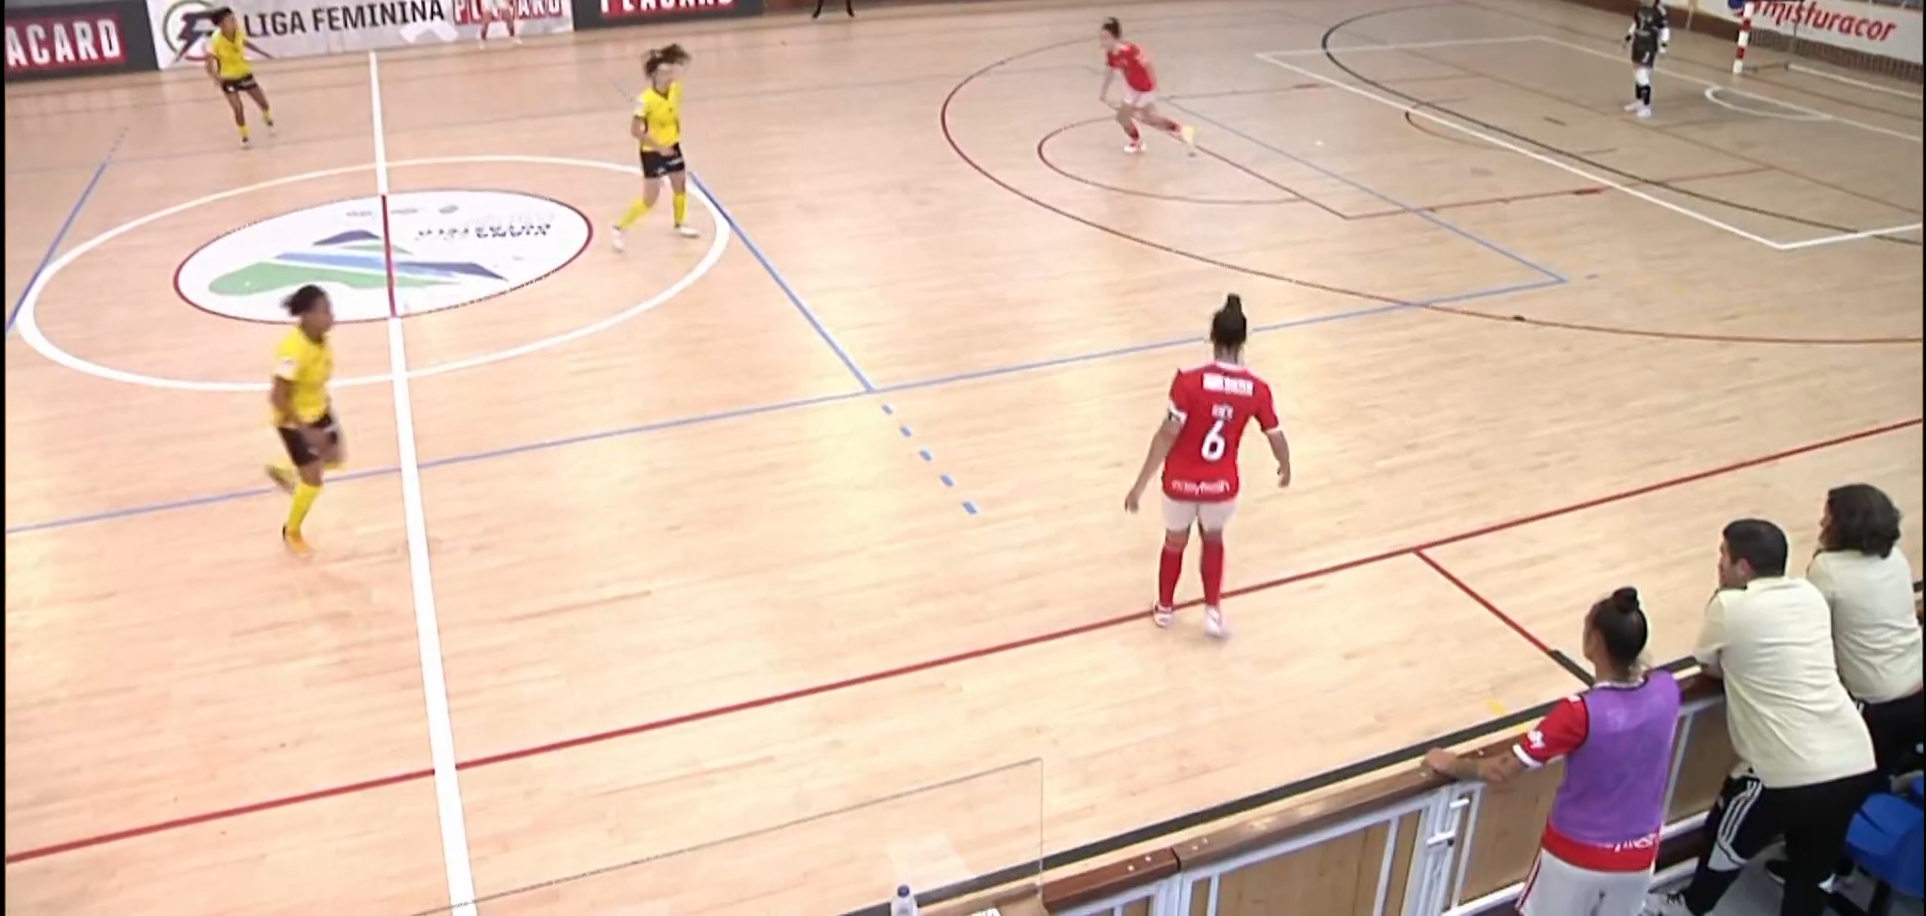 Santa Luzia FC goleado pelo SL Benfica no primeiro jogo da meia final do play-off de futsal feminino